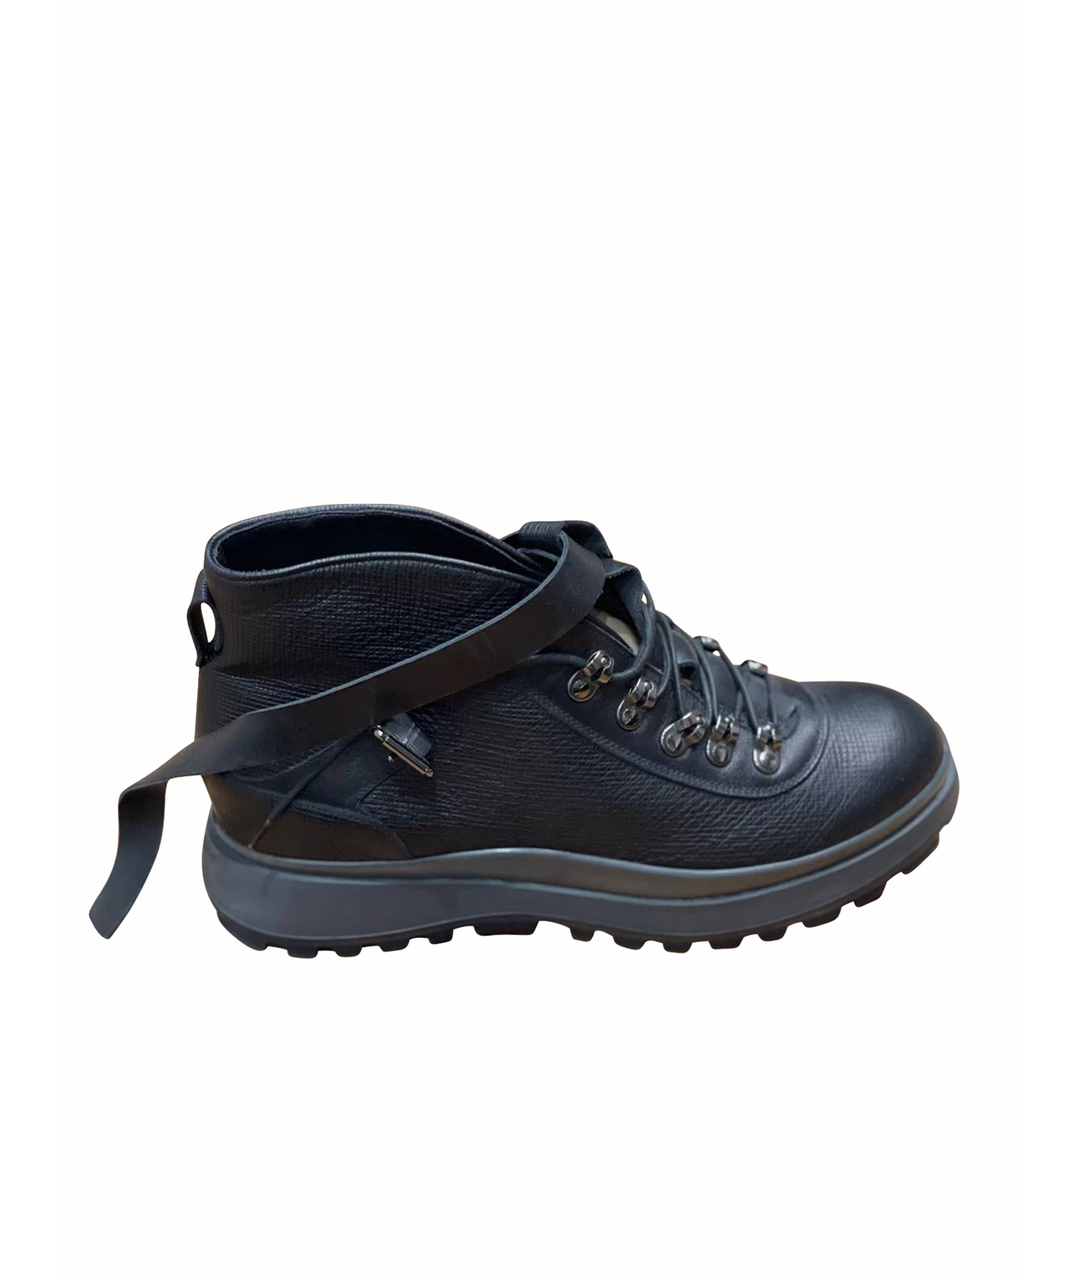 GIORGIO ARMANI Черные кожаные высокие ботинки, фото 1